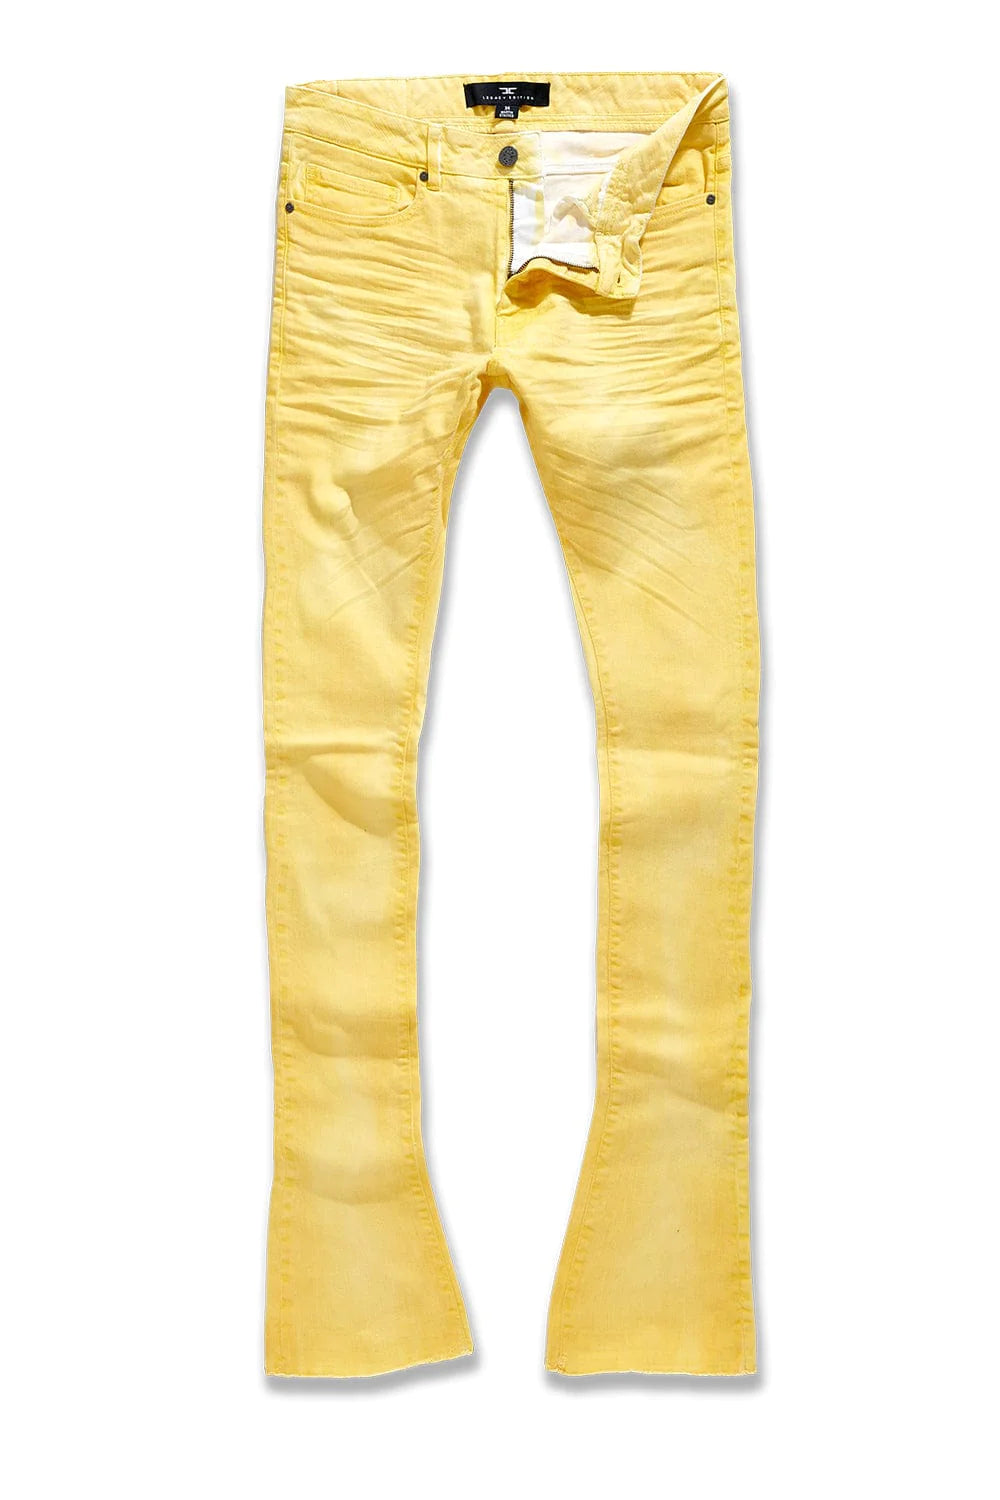 Martin Stacked - Full Bloom Denim Jeans - Gold